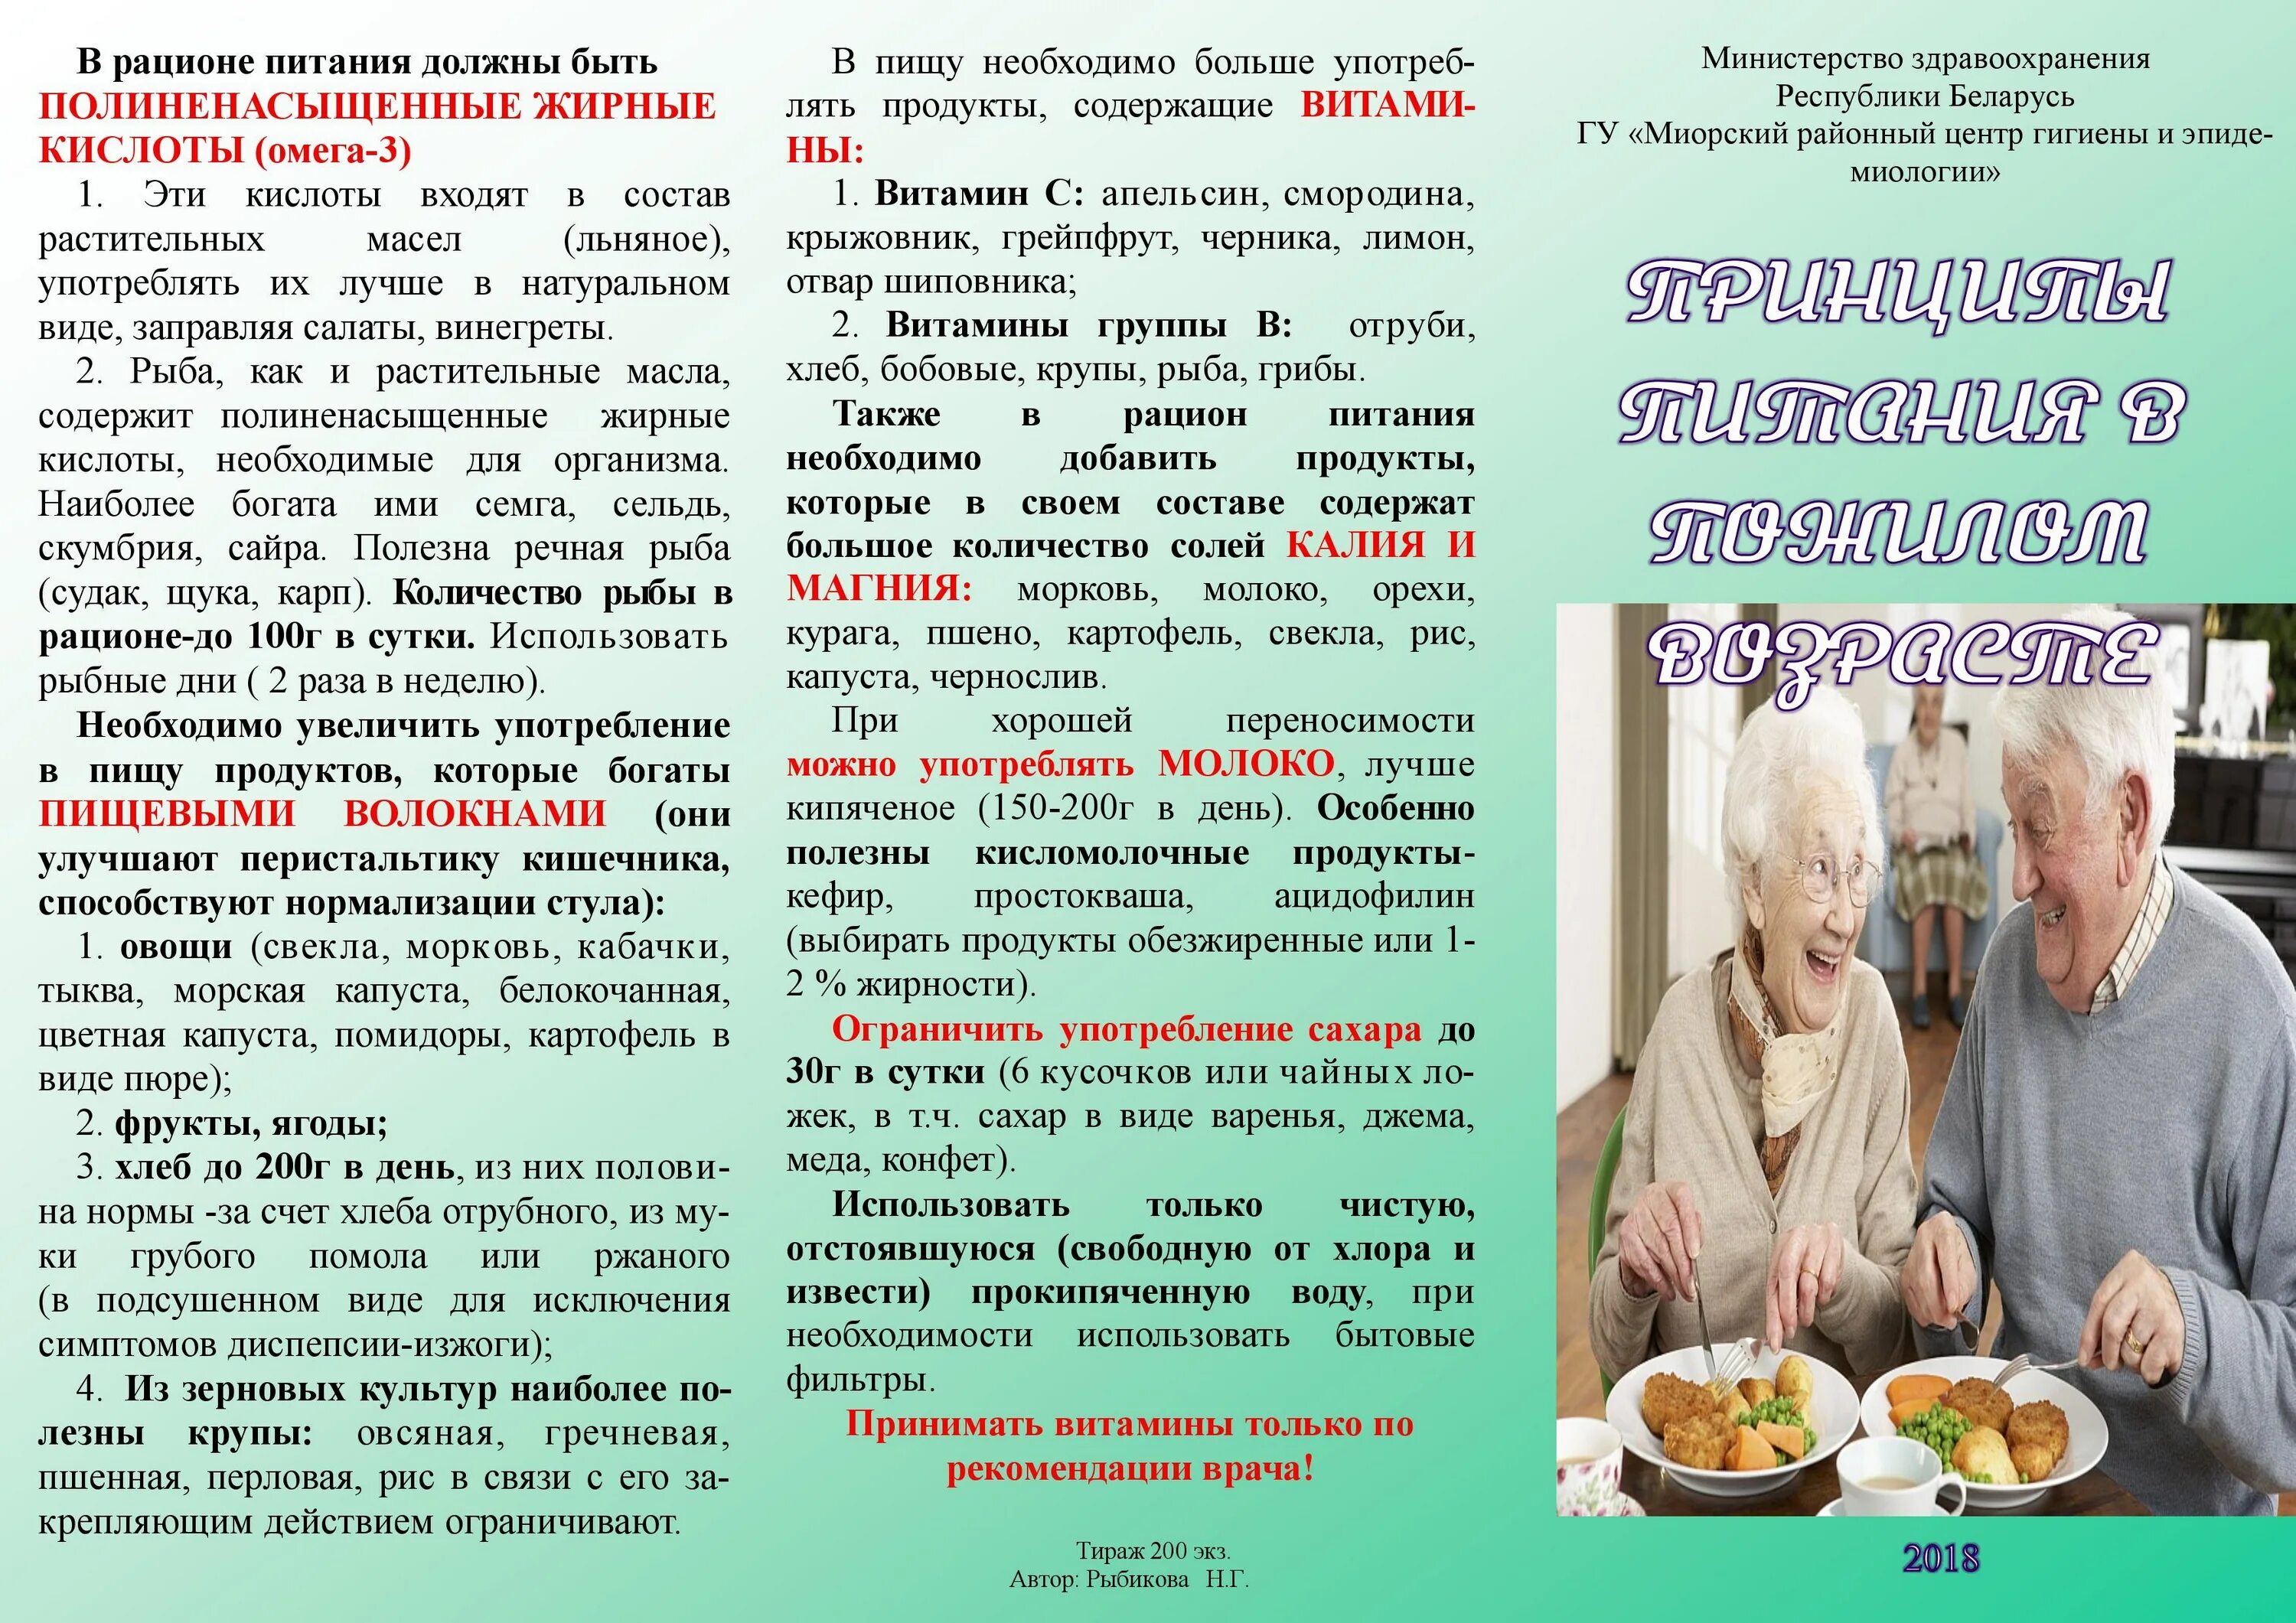 Диета для мужчин после 60 лет. Питание пожилых людей рекомендации. Рекомендации по питанию пожилого возраста. Питание пожилых людей памятка. Советы по питанию для пожилых людей.